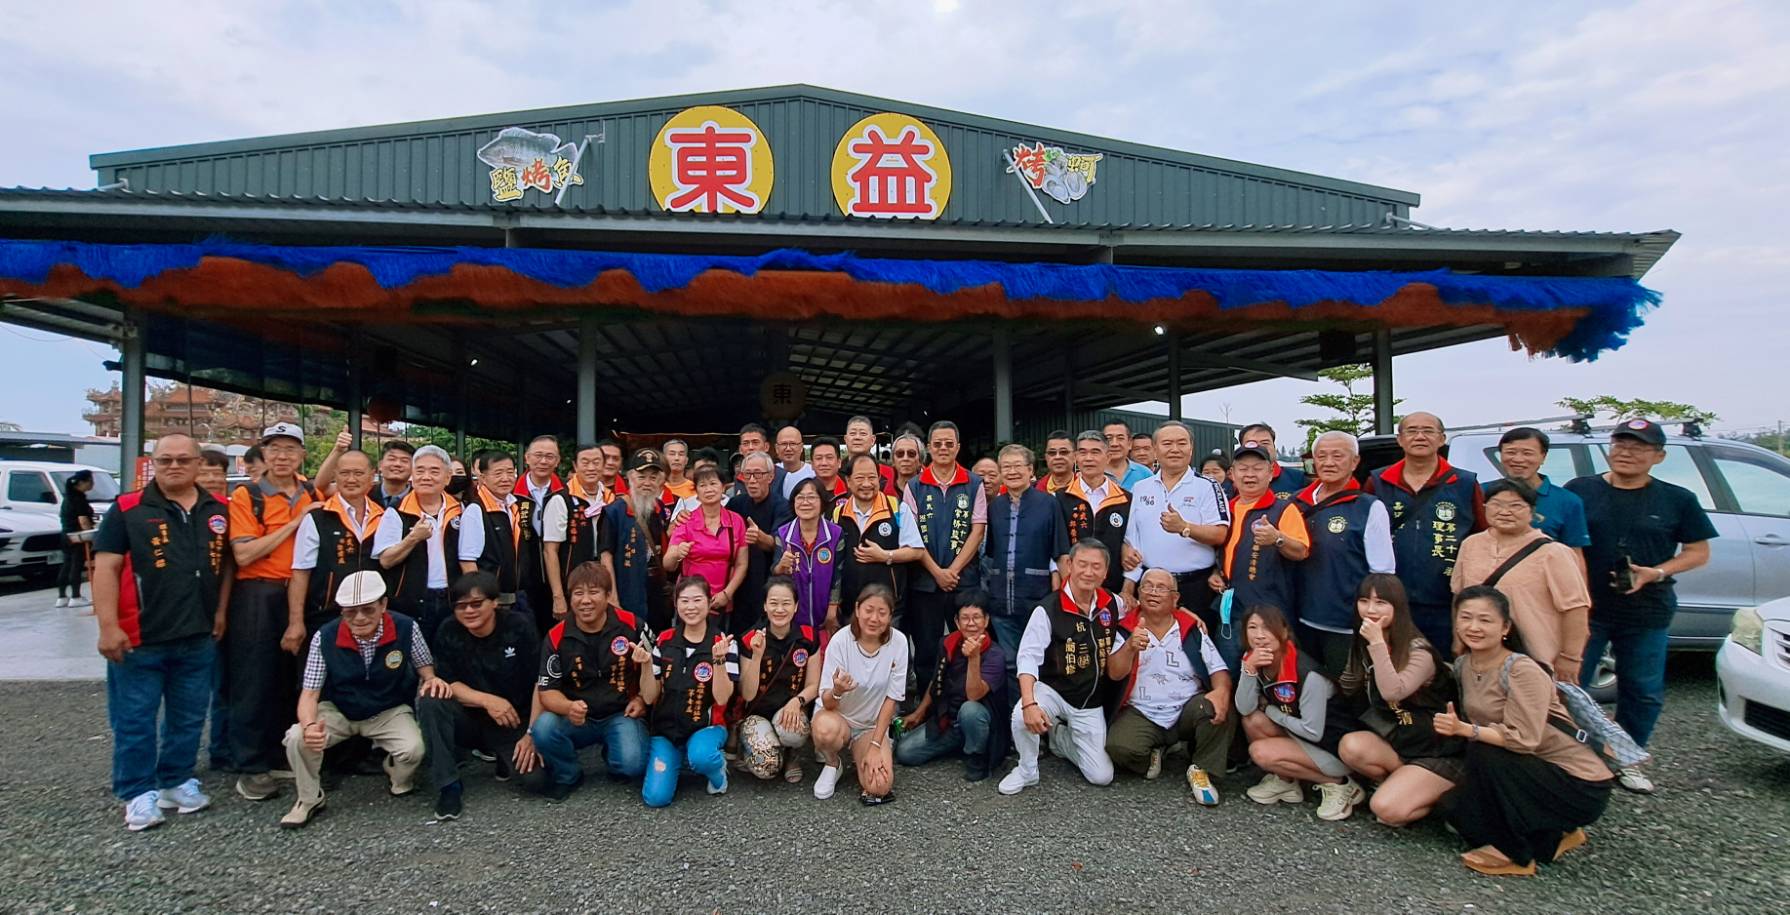 國內知名社團台南安清協會  今日舉辦了全國安清大聯誼  現場冠蓋雲集、熱鬧非凡